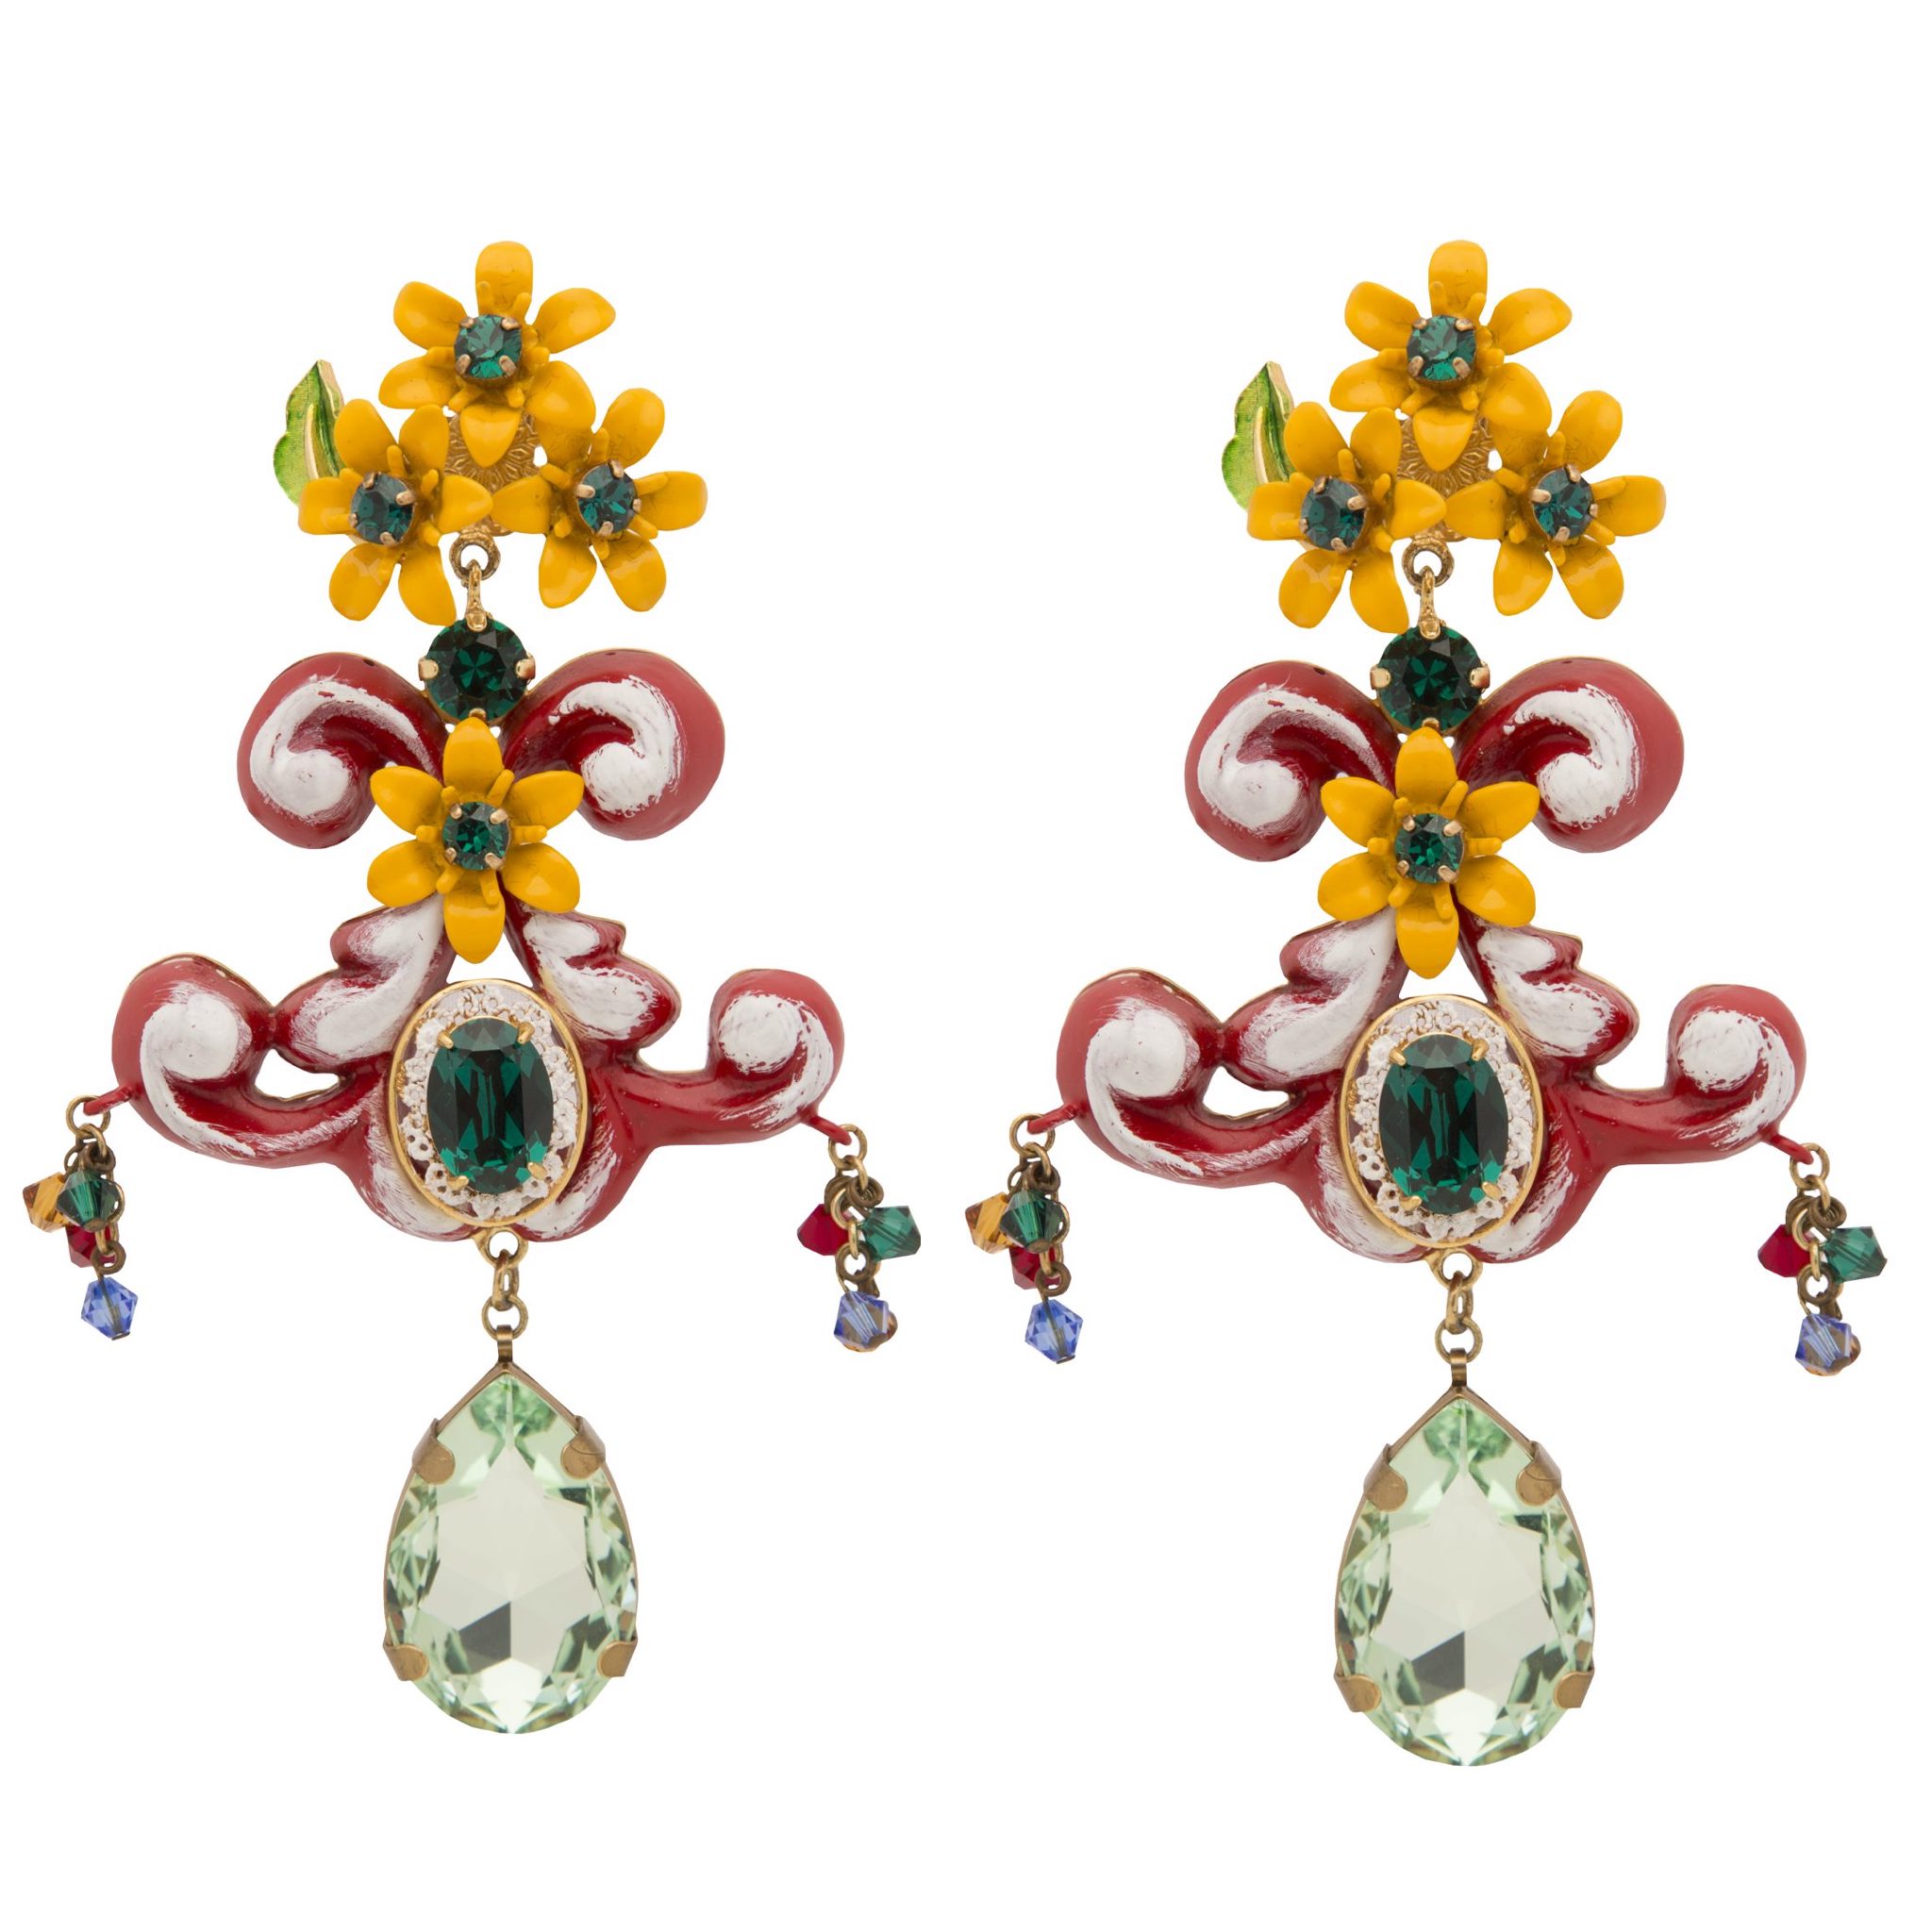 Statement chandelier ‘Carretto’ earrings